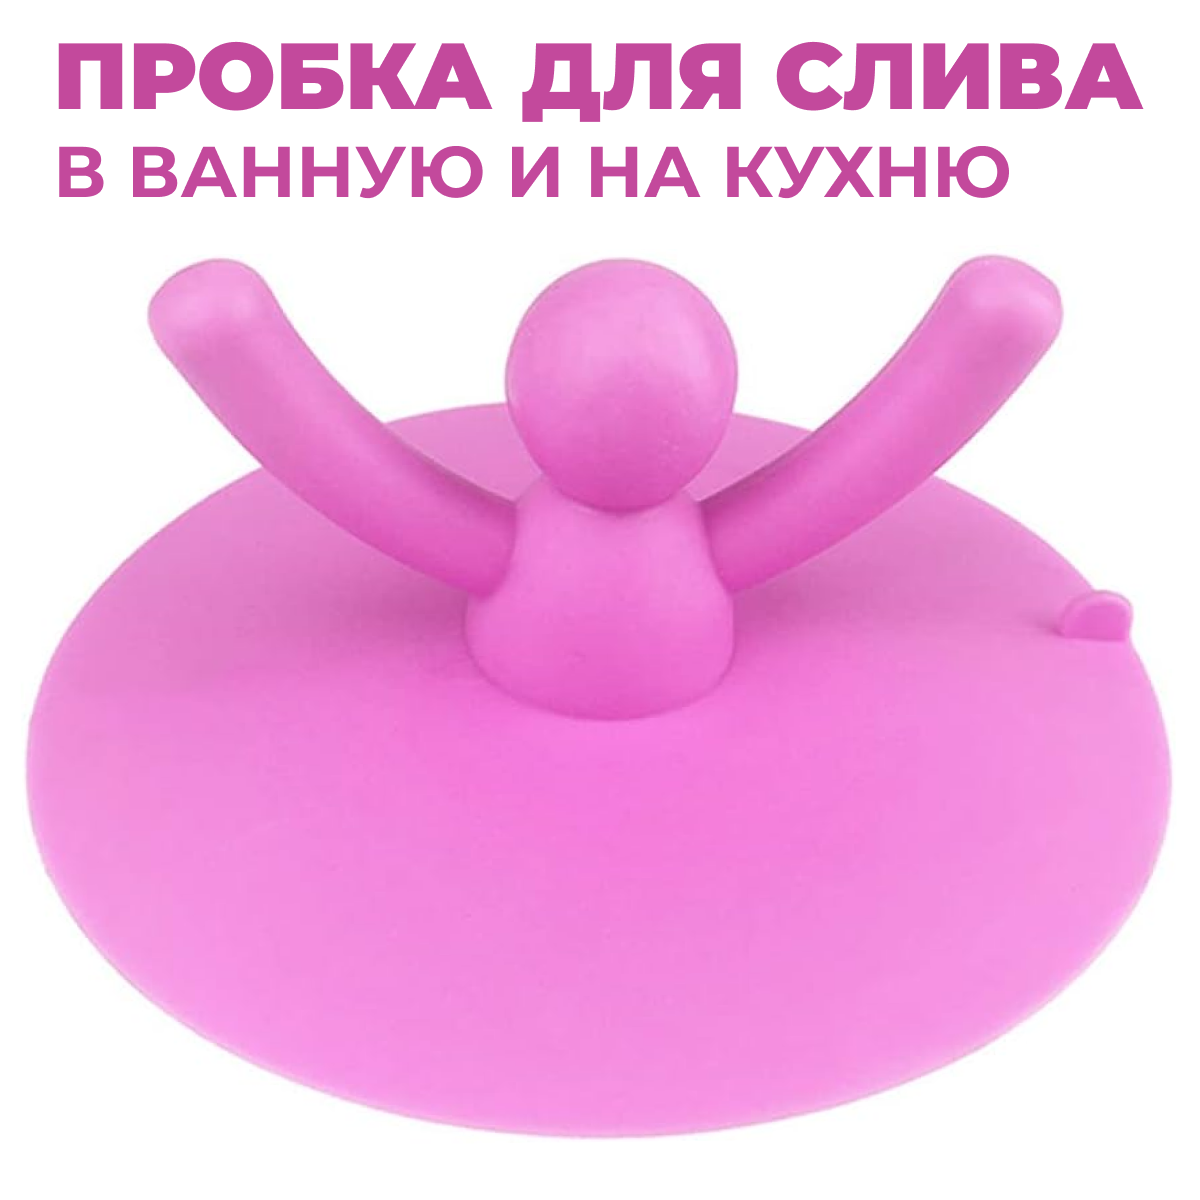 Резиновая пробка для ванны и раковины Человечек розовый Заглушка для мойки для закупоривания сливного отверстия в ванне или раковине для дома и дачи универсальная резиновая